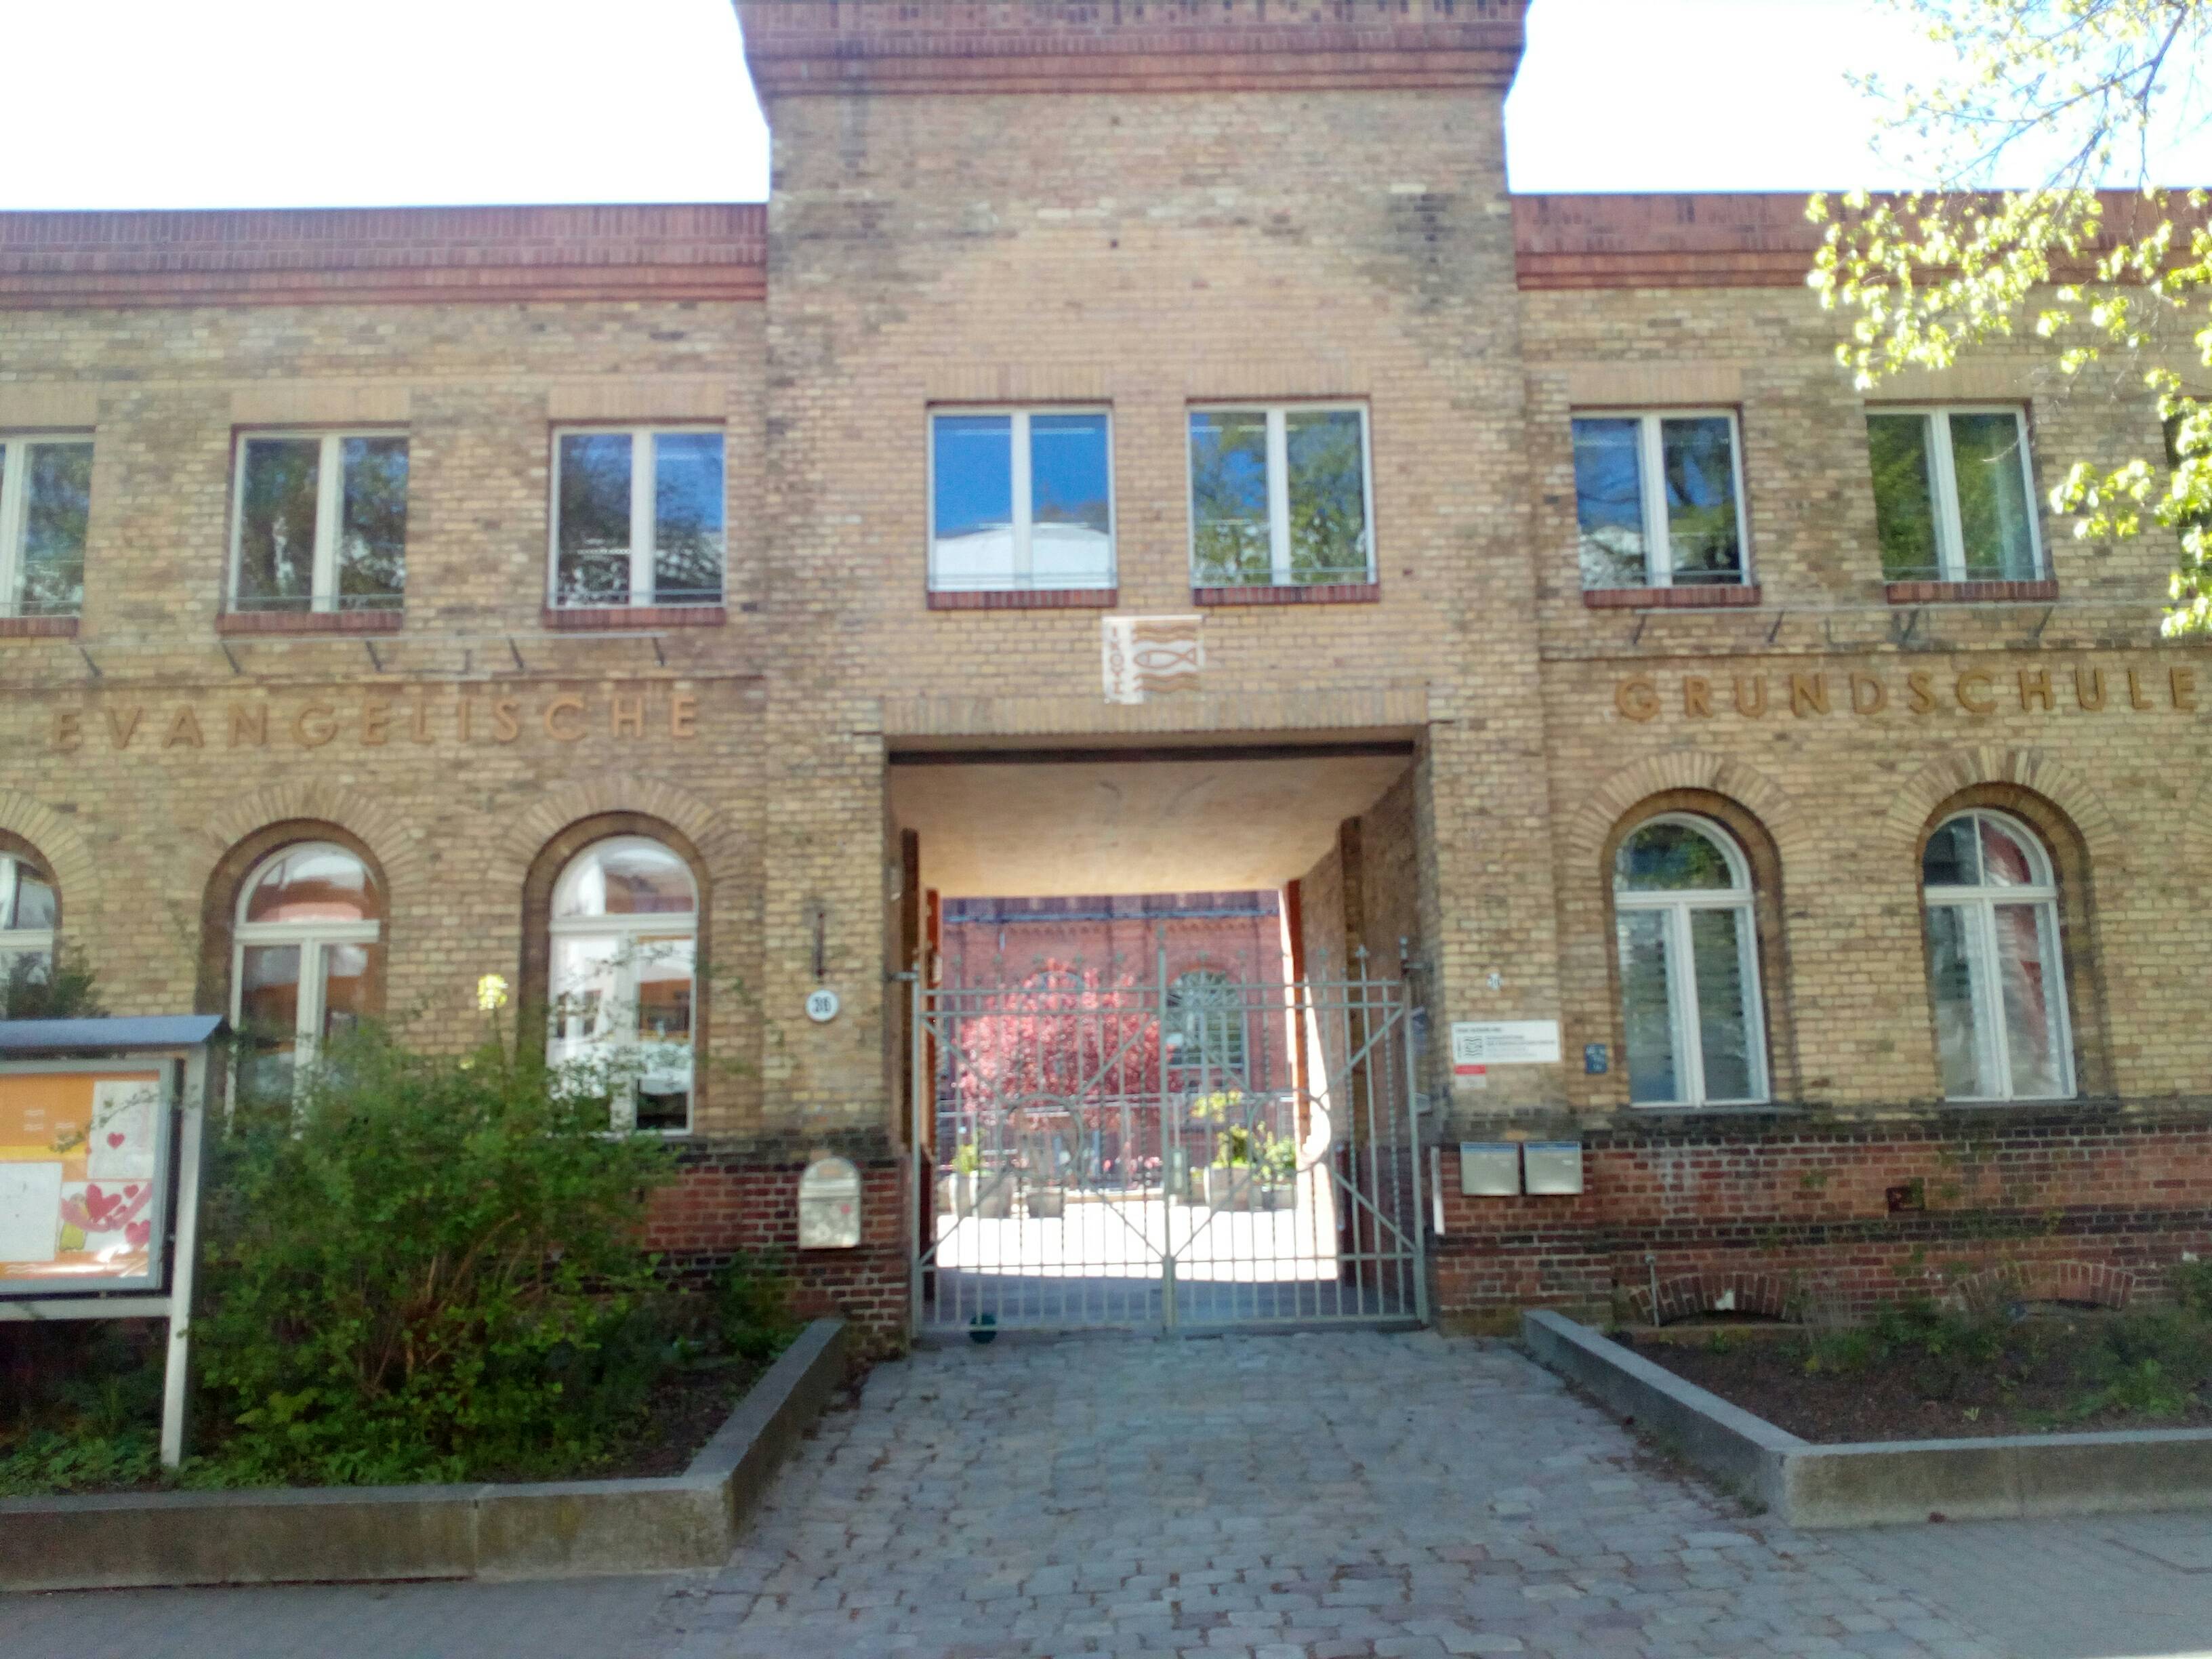 Evangelische Grundschule in Friedrichshagen